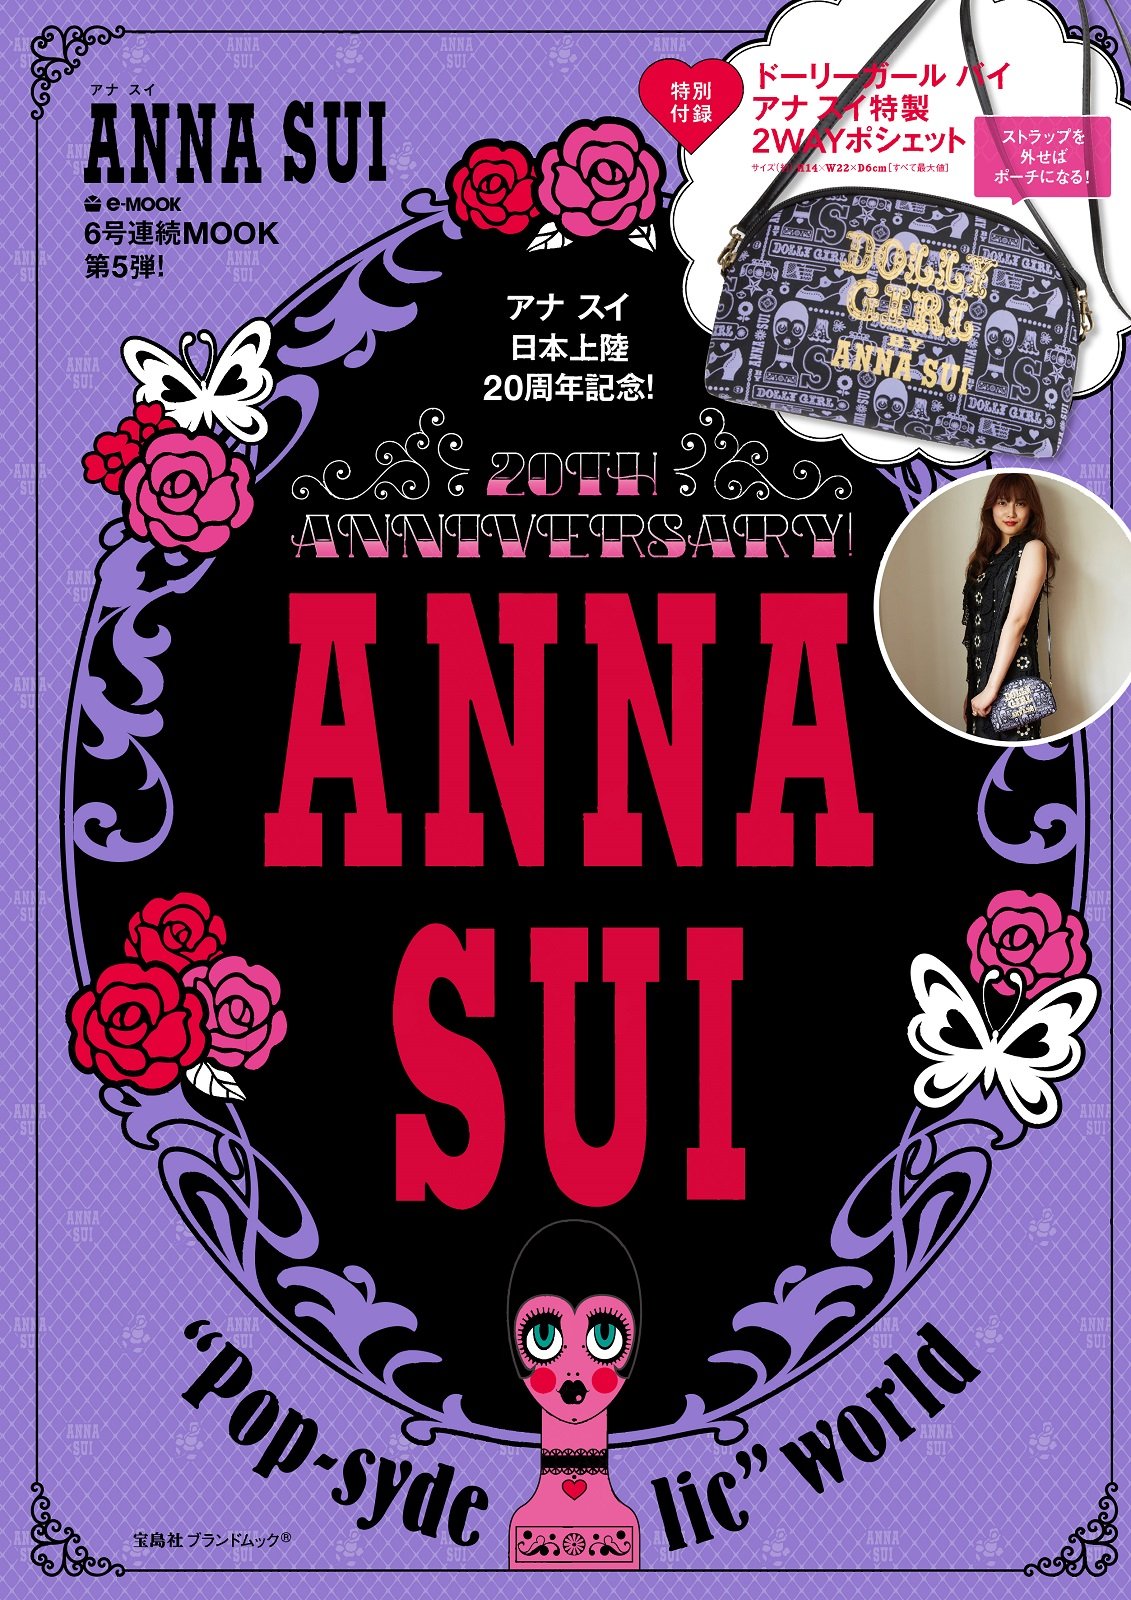 ANNA SUI 20TH ANNIVERSARY!